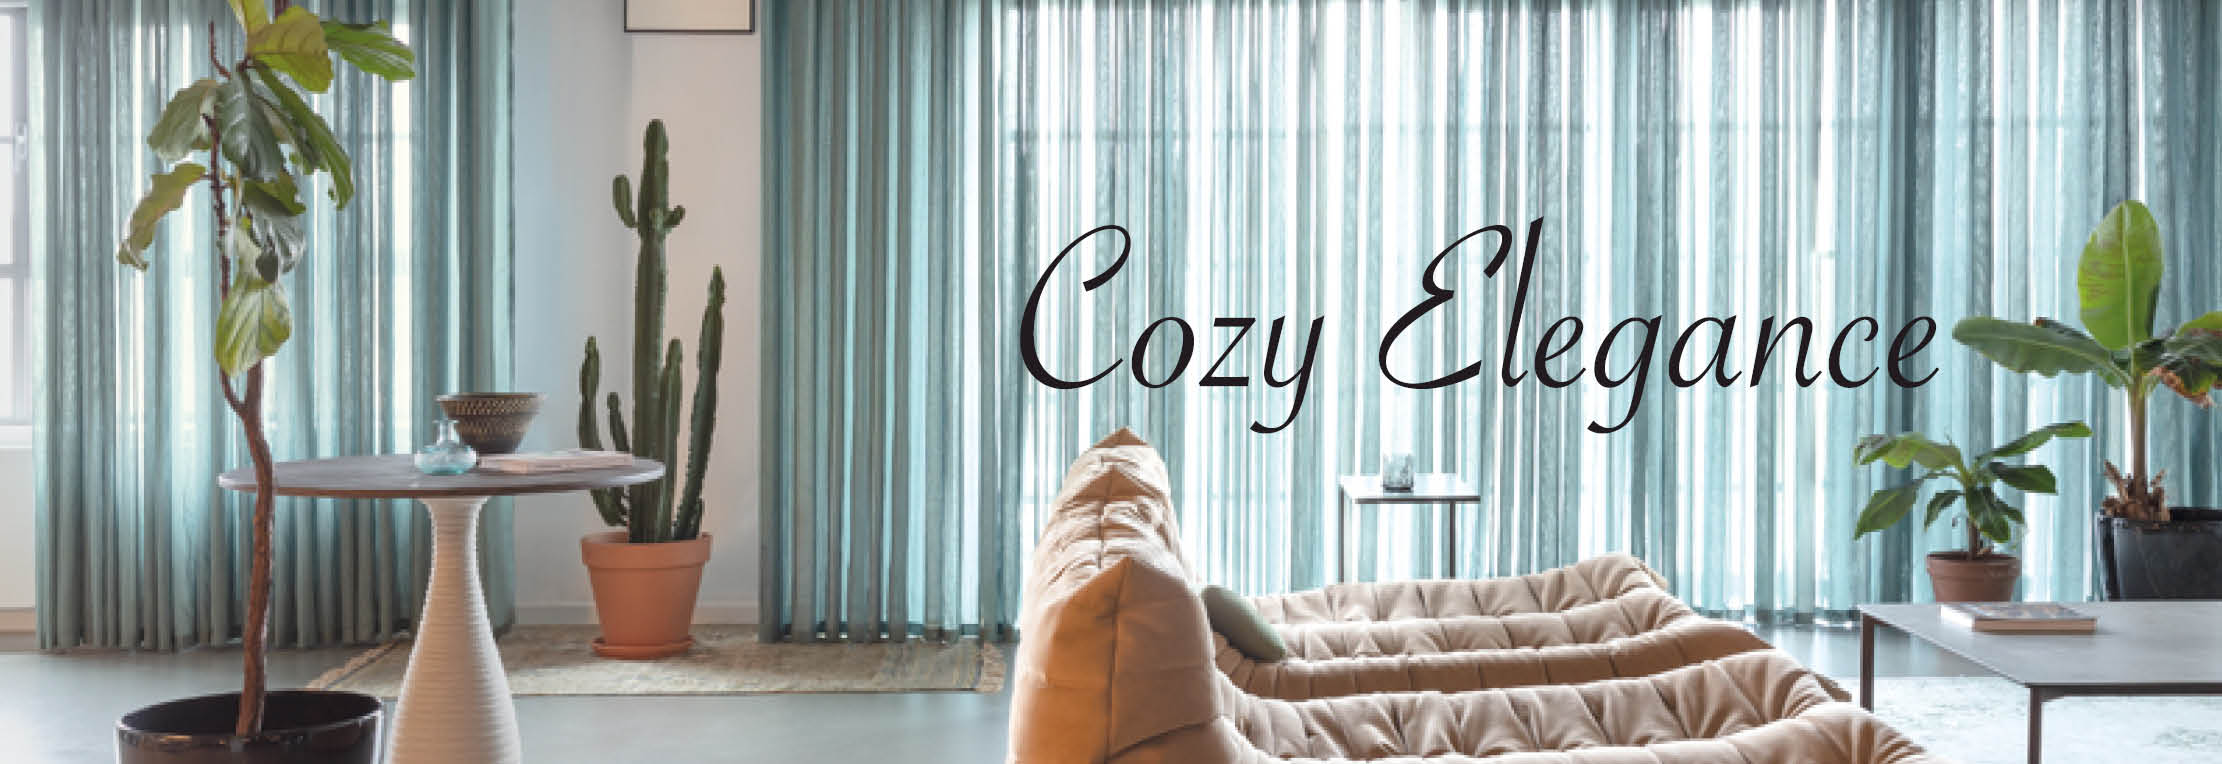 Cozy Elegance Fuggerhaus Stoffkollektion hochwertige Gardinen und Vorhänge